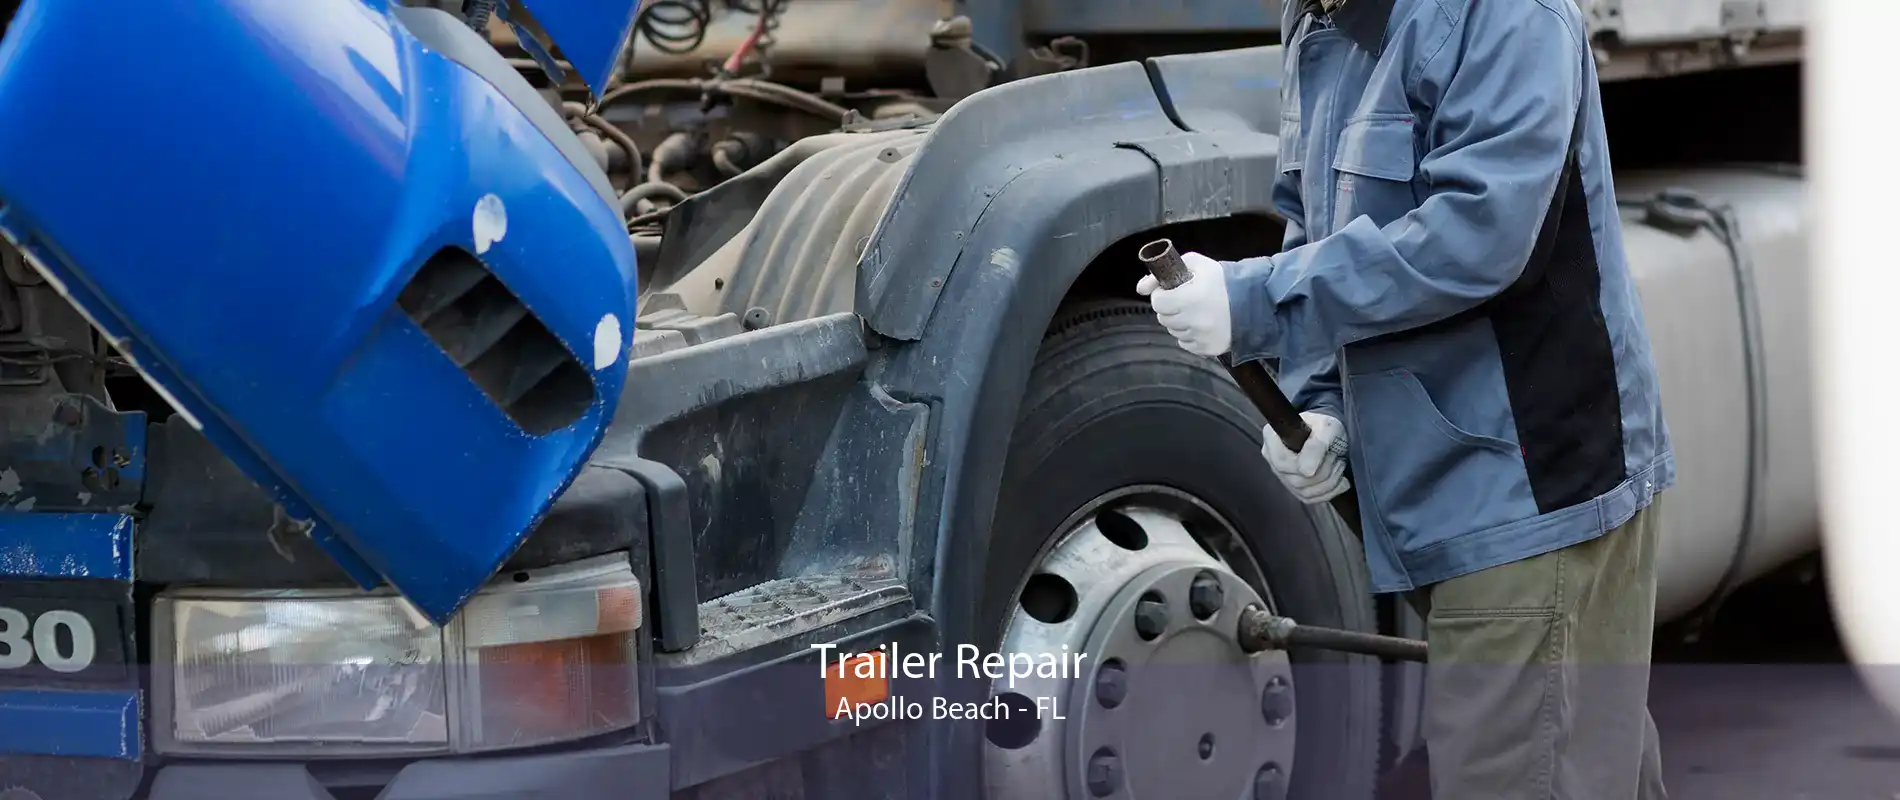 Trailer Repair Apollo Beach - FL